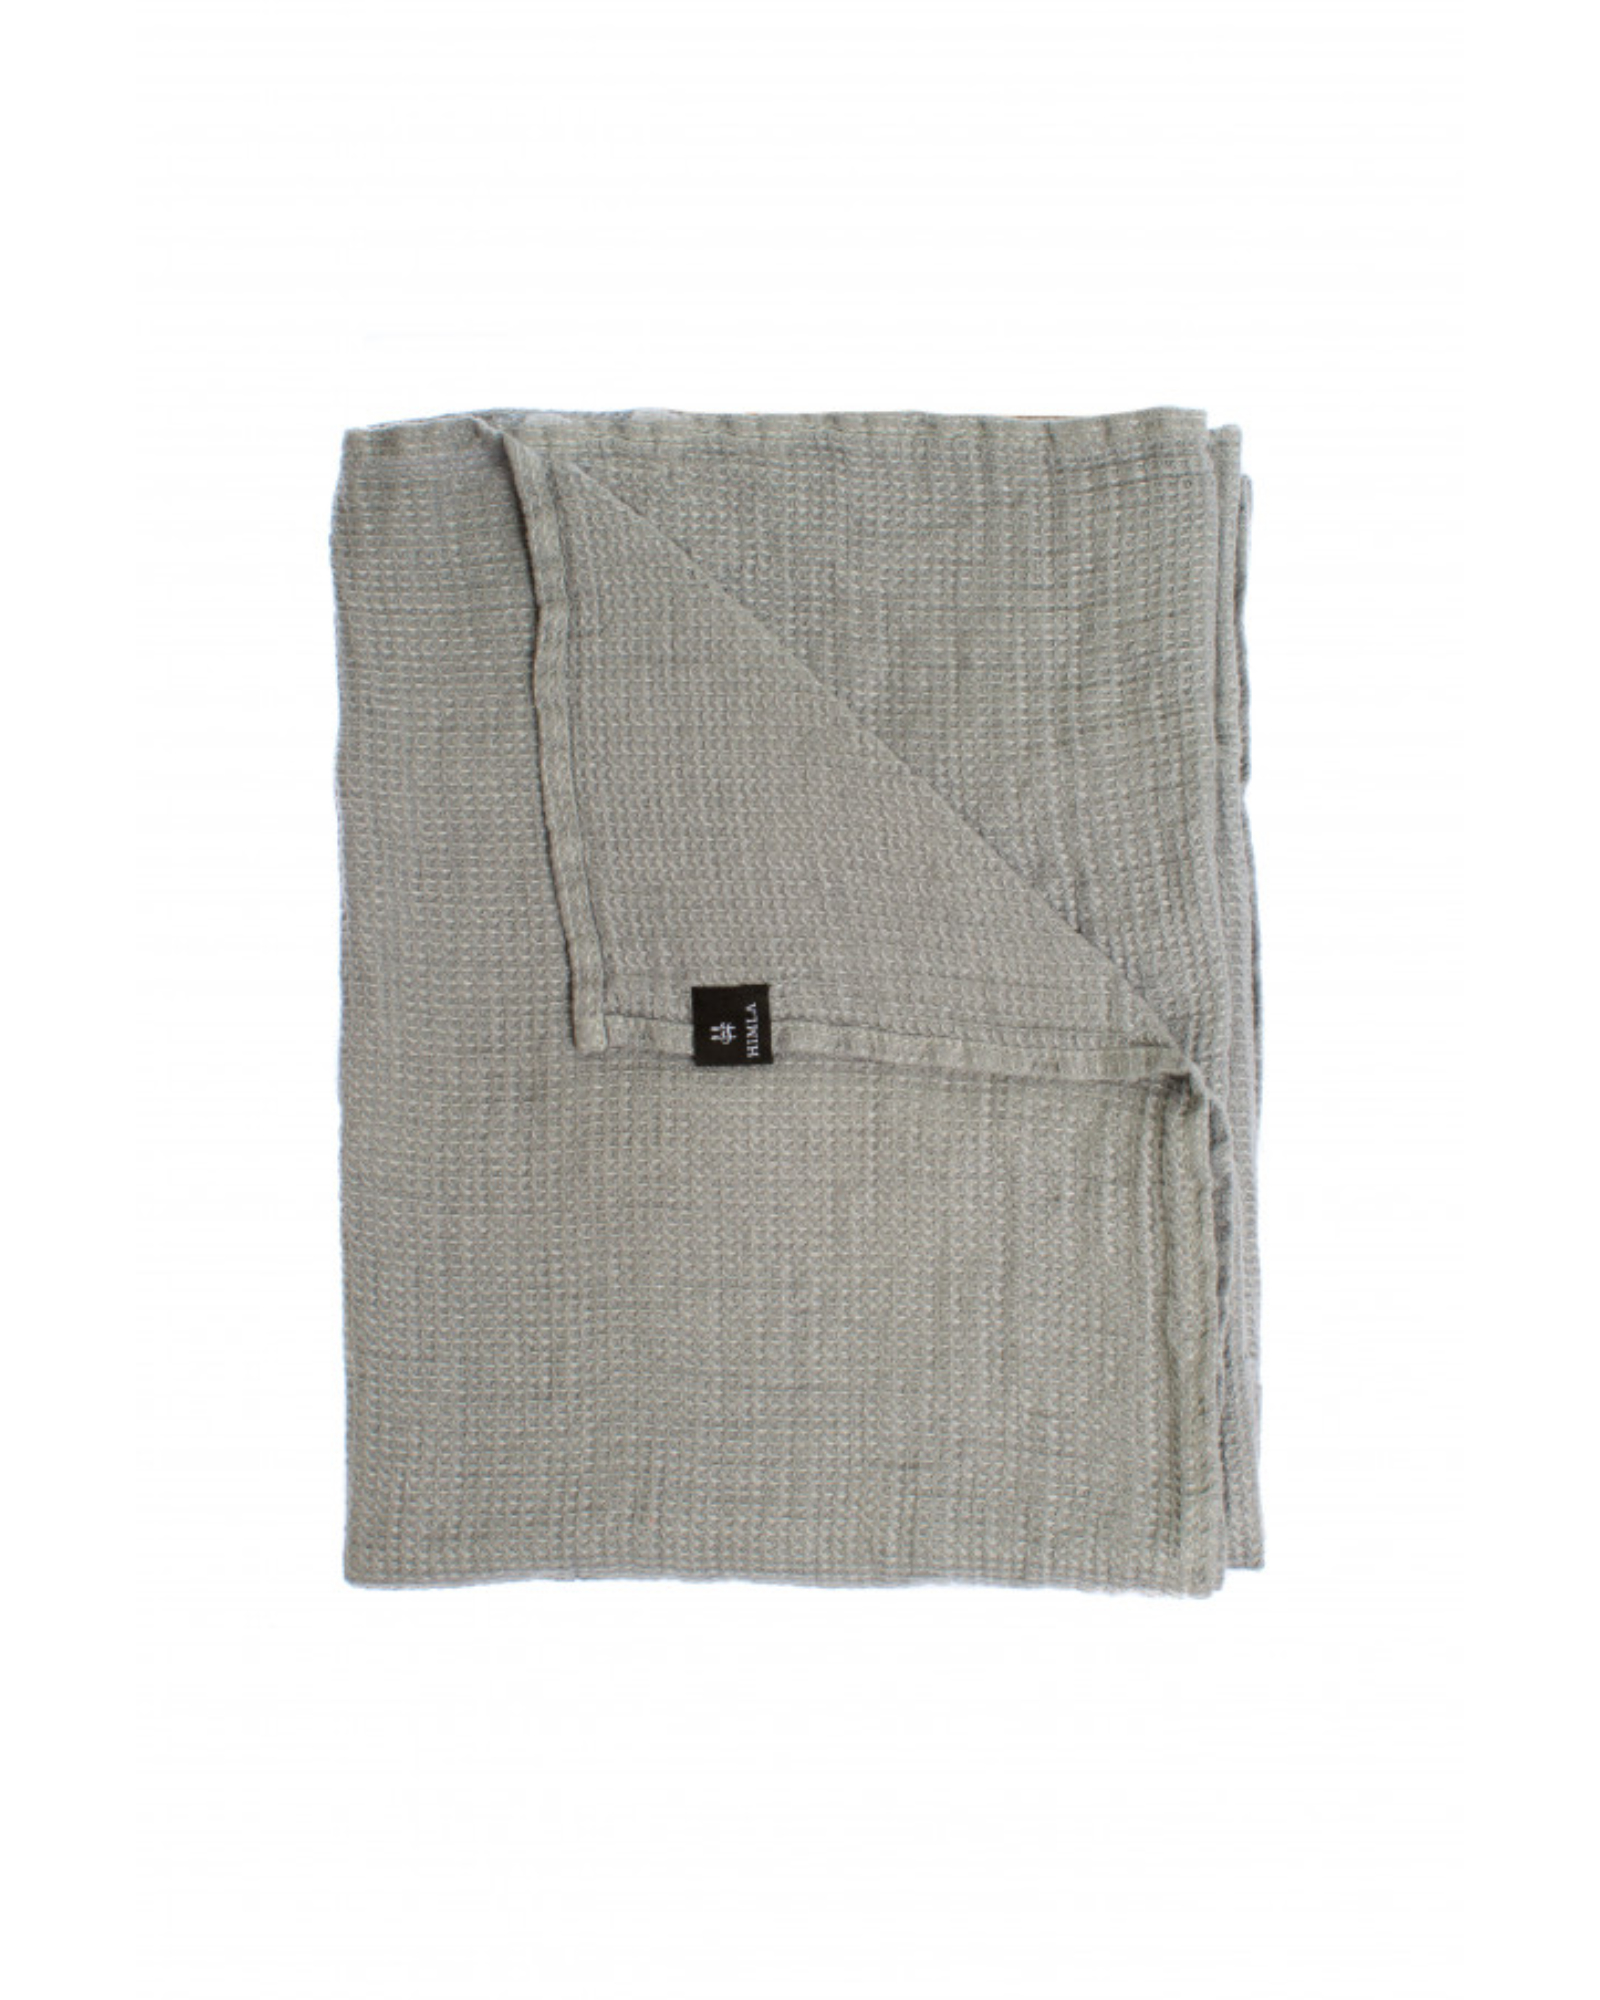 Himla - Guest towel FRESH - 47x65 cm - silver